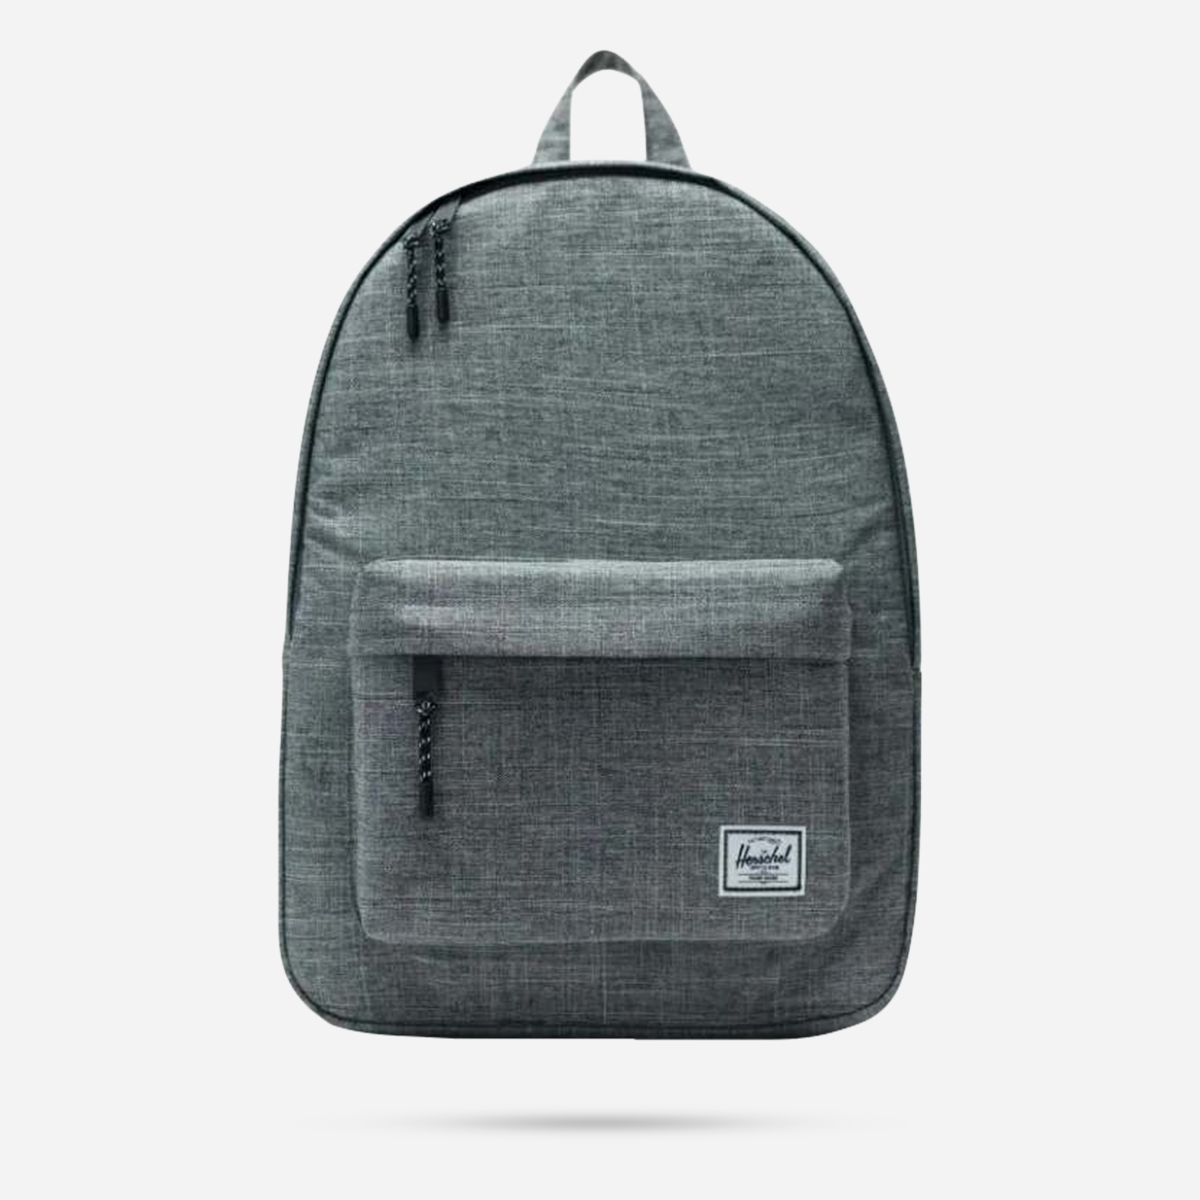 AN300528 Classicâ„¢ Backpack